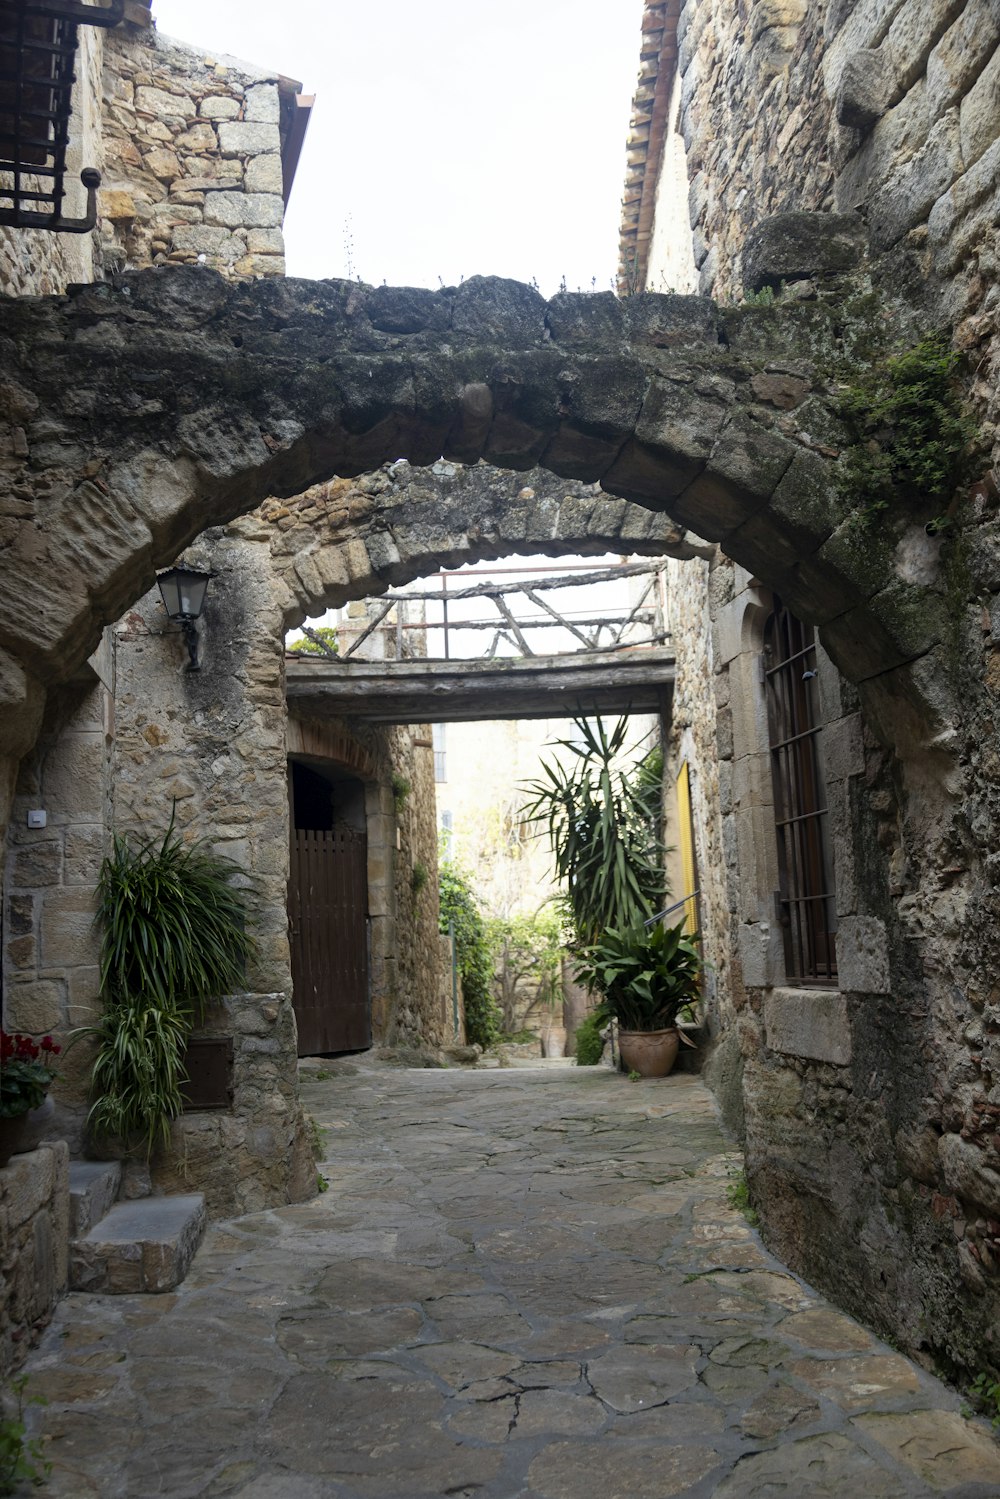 a stone walkway between stone buildings